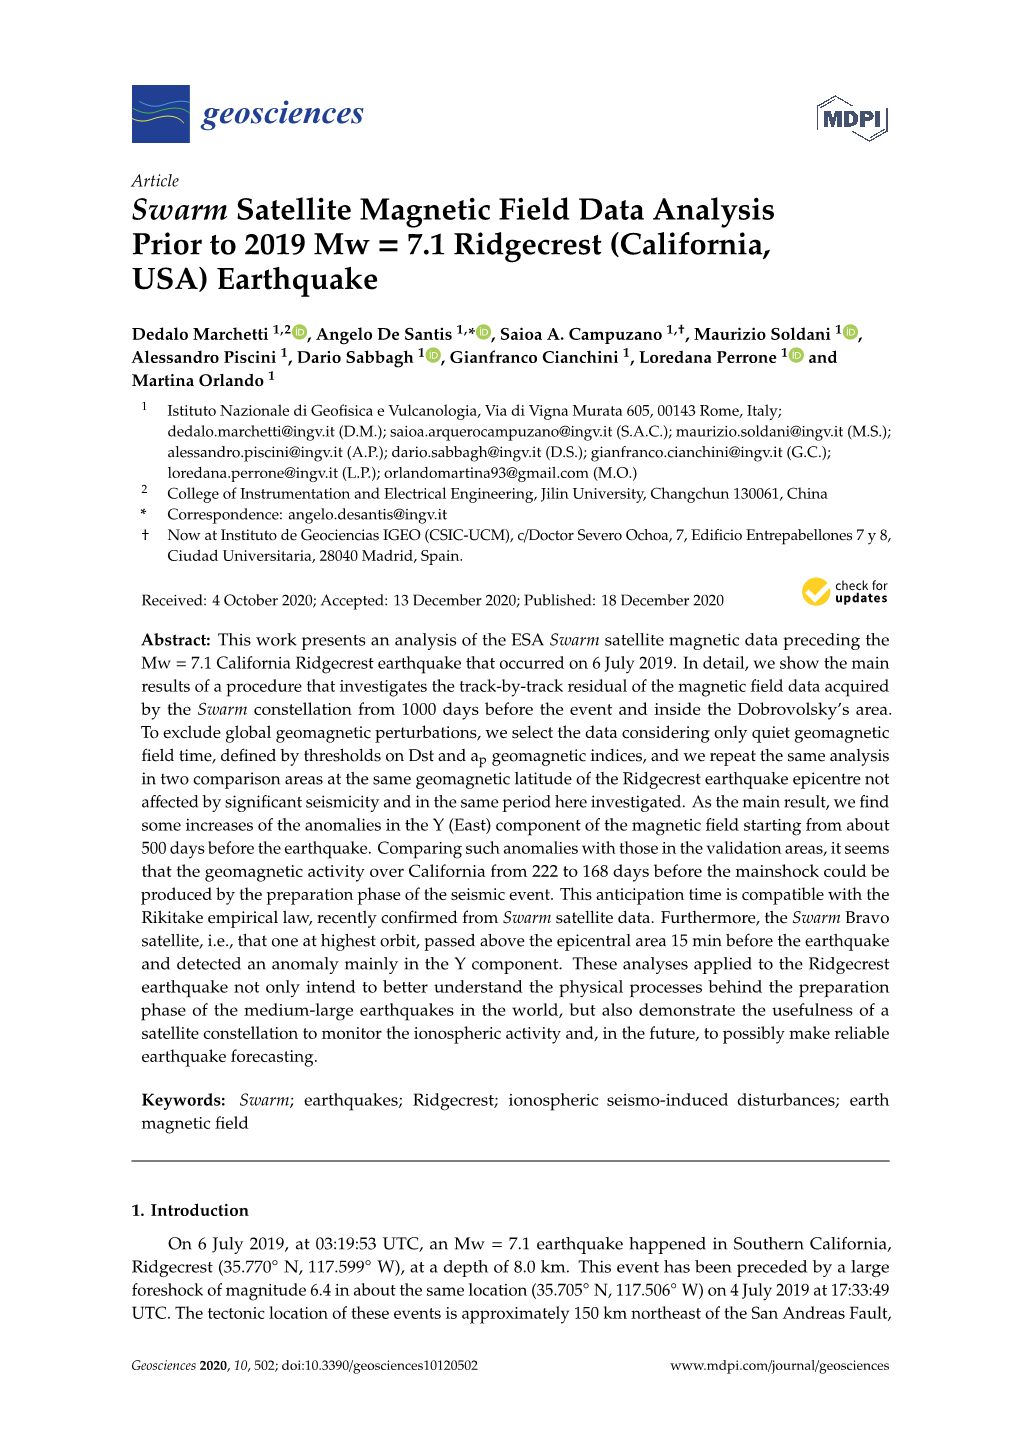 Swarm Satellite Magnetic Field Data Analysis Prior to 2019 Mw = 7.1 Ridgecrest (California, USA) Earthquake